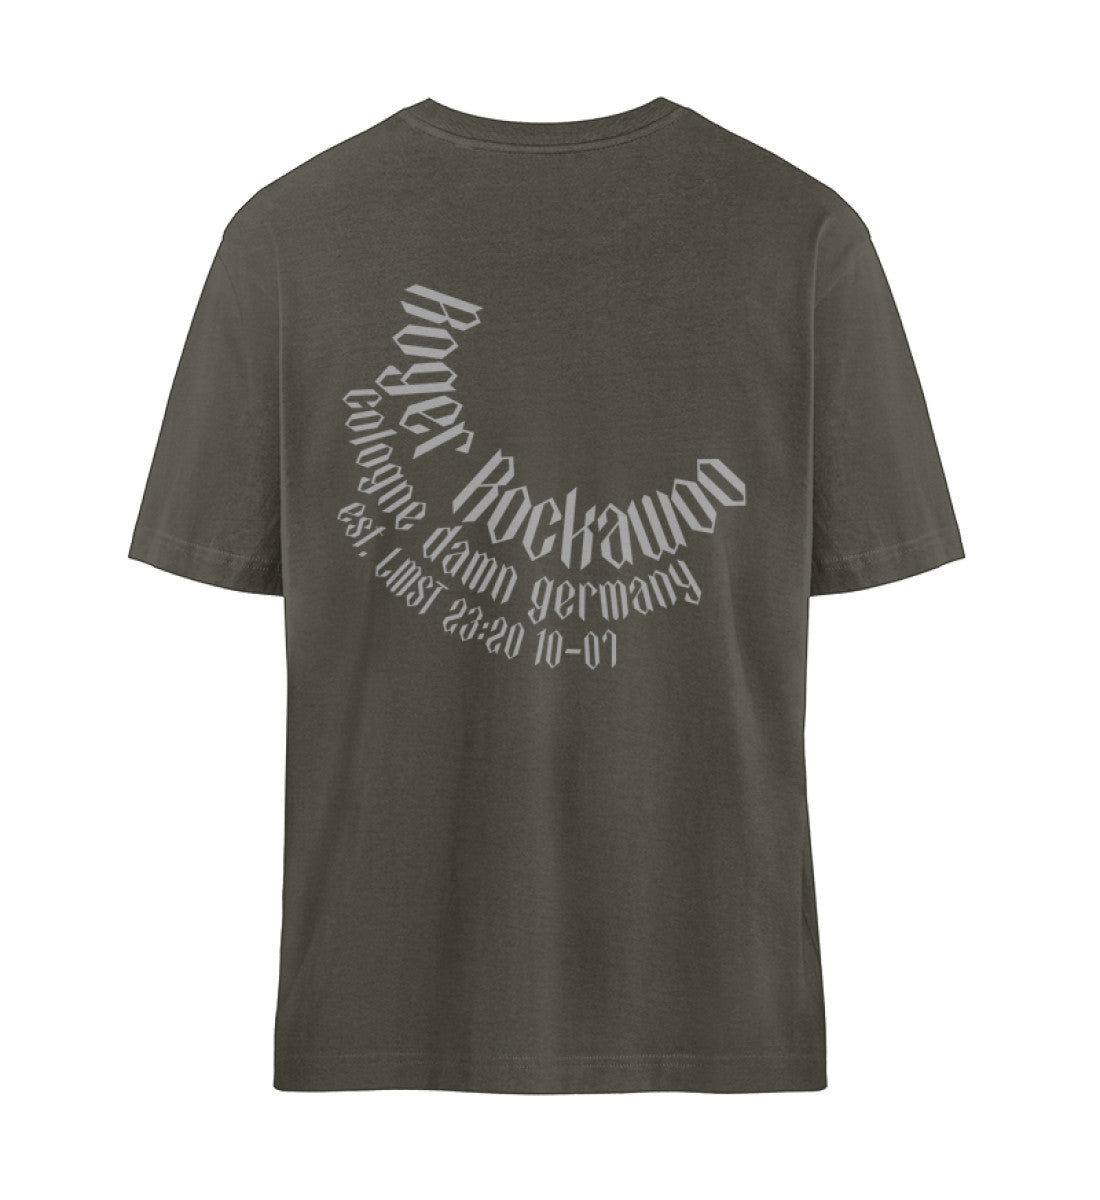 Khaki farbiges T-Shirt Unisex Relaxed Fit für Frauen und Männer bedruckt mit dem Design der Roger Rockawoo Kollektion Rocknroll never lies